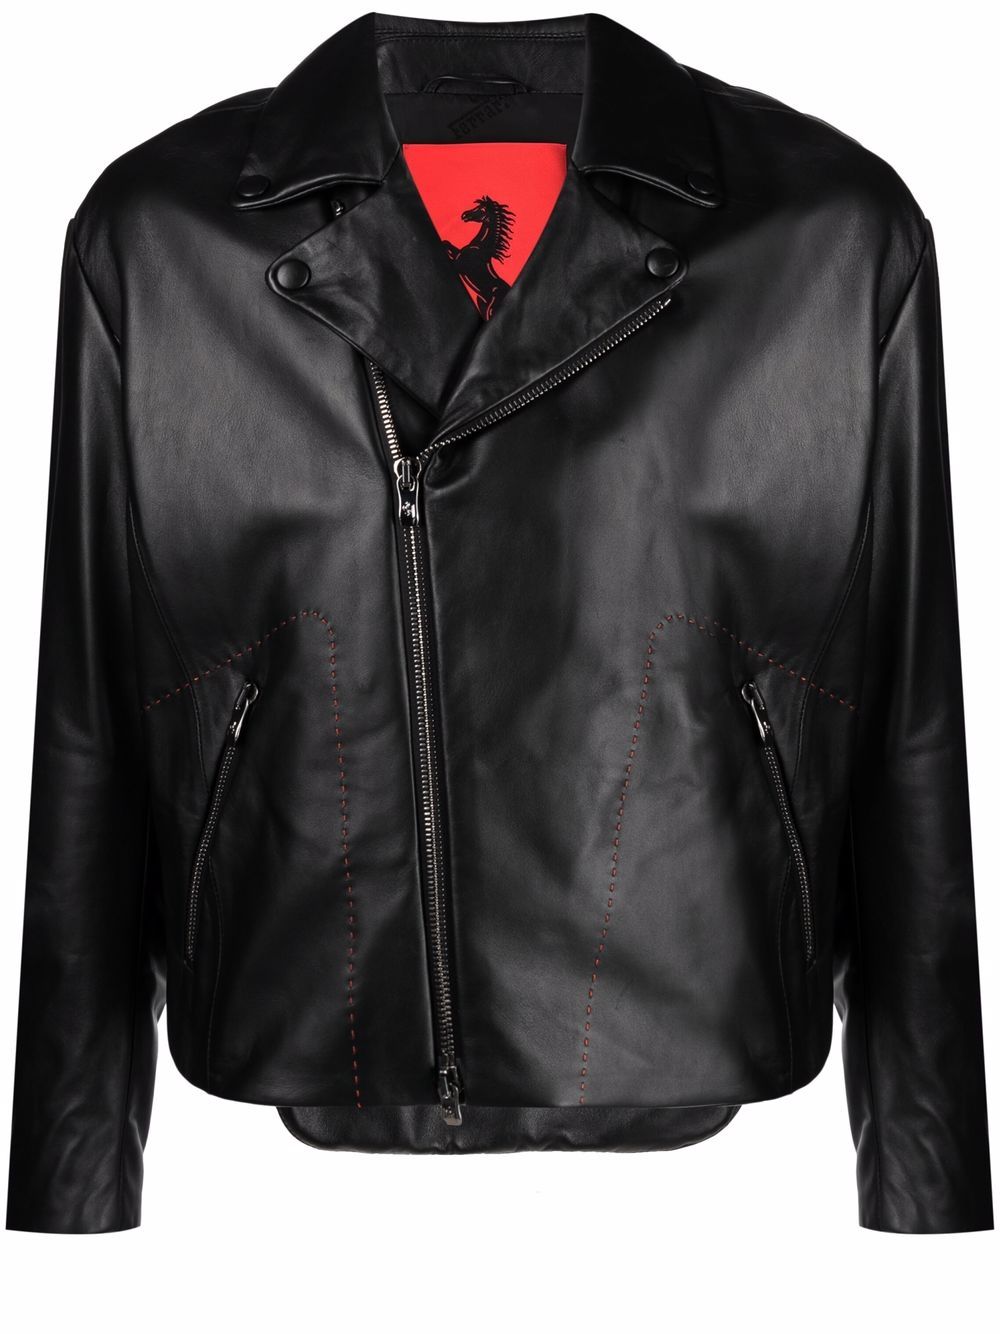 Ferrari Prancing Horse leather biker jacket - Black von Ferrari